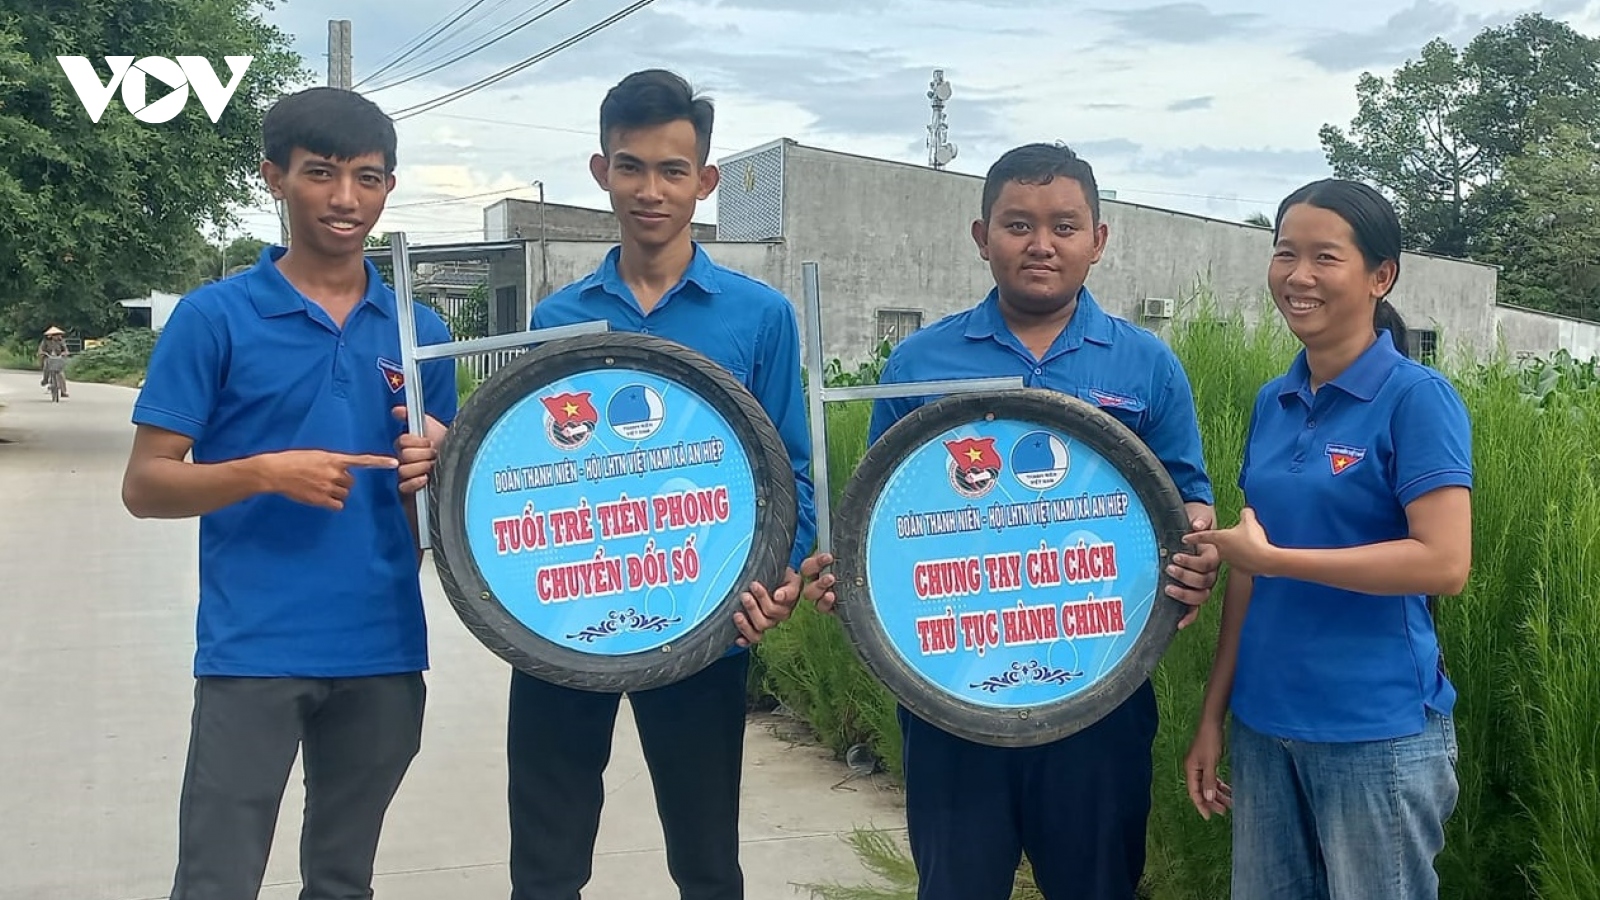 Tuổi trẻ Sóc Trăng tái chế lốp xe cũ thành biển tuyên truyền giáo dục pháp luật